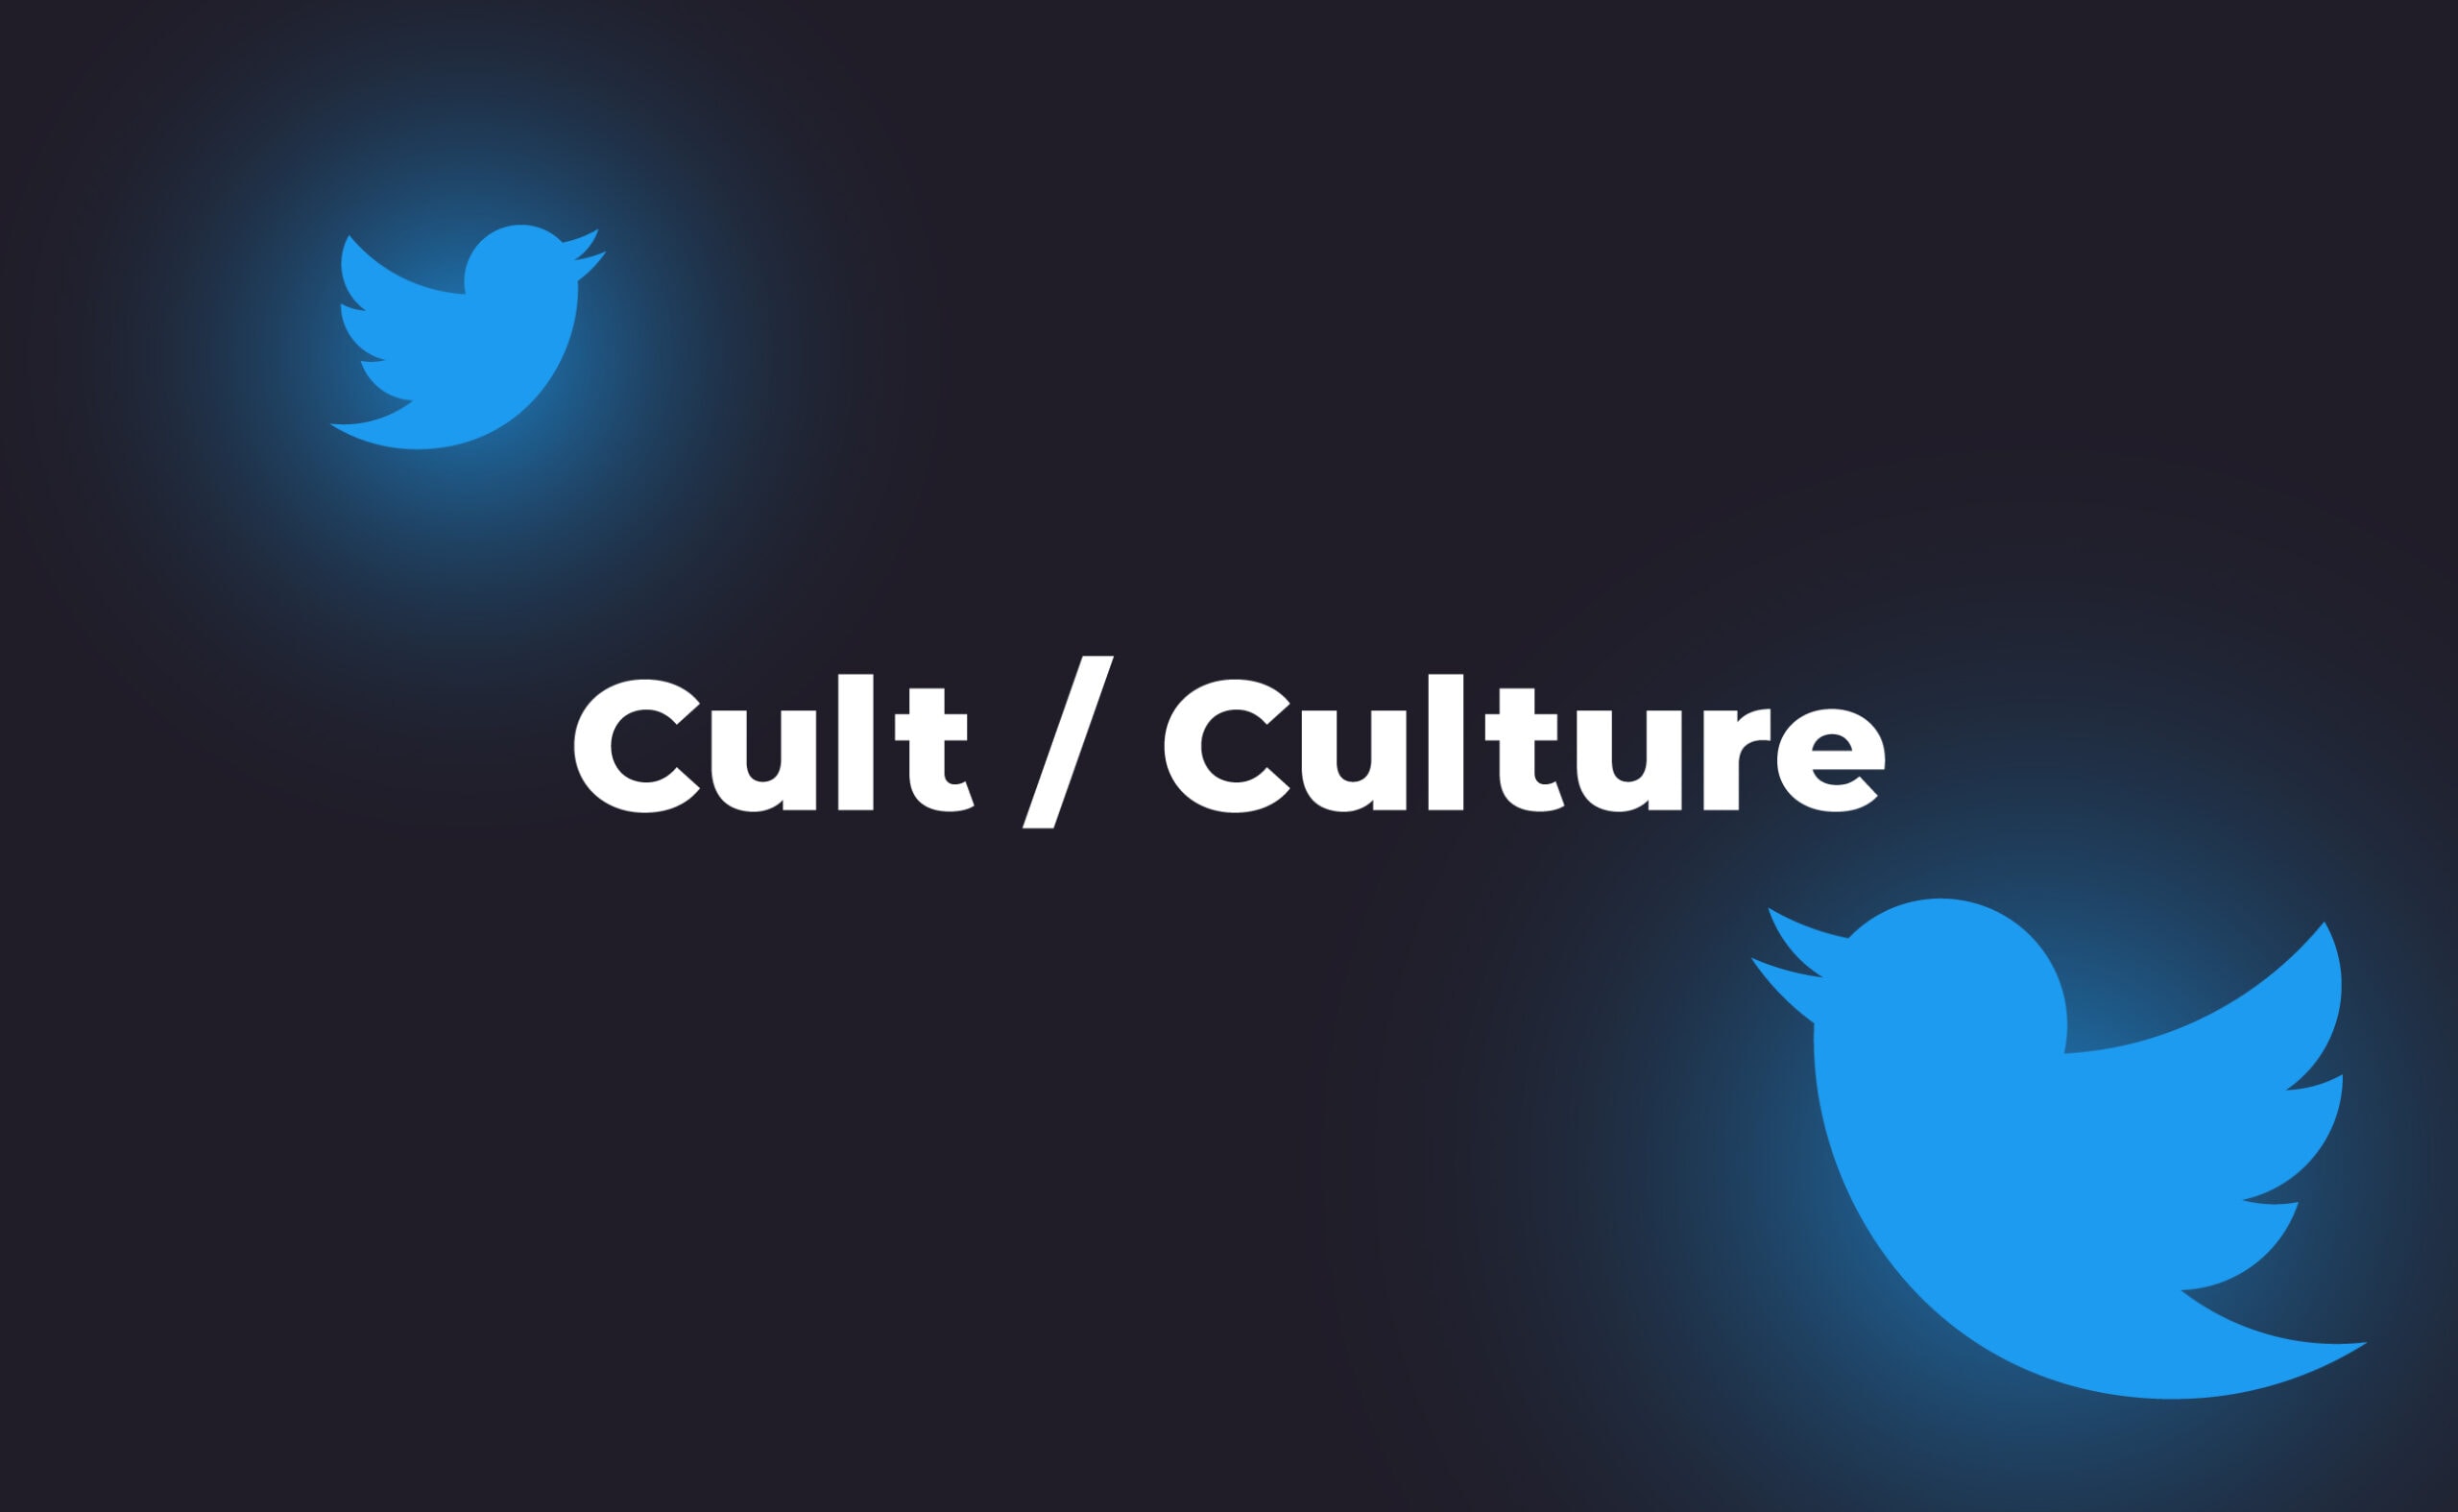 Wskaźnik CULT skacze o ponad 84% dzięki tweetowi Maska. Główny kolaż wiadomości.